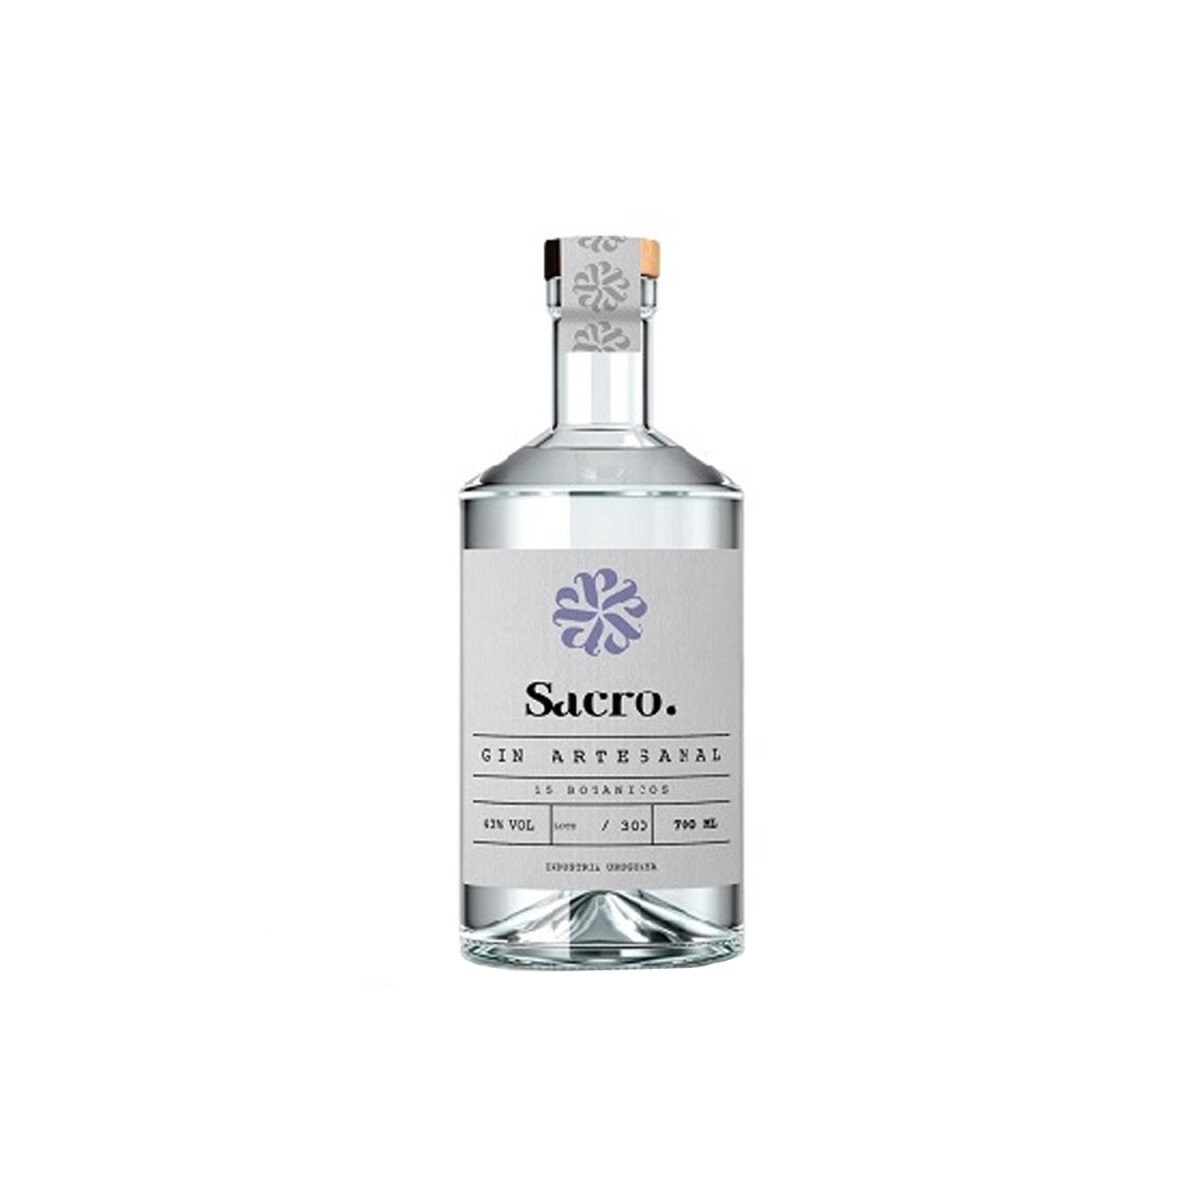 Gin Artesanal Sacro - 700 ml 